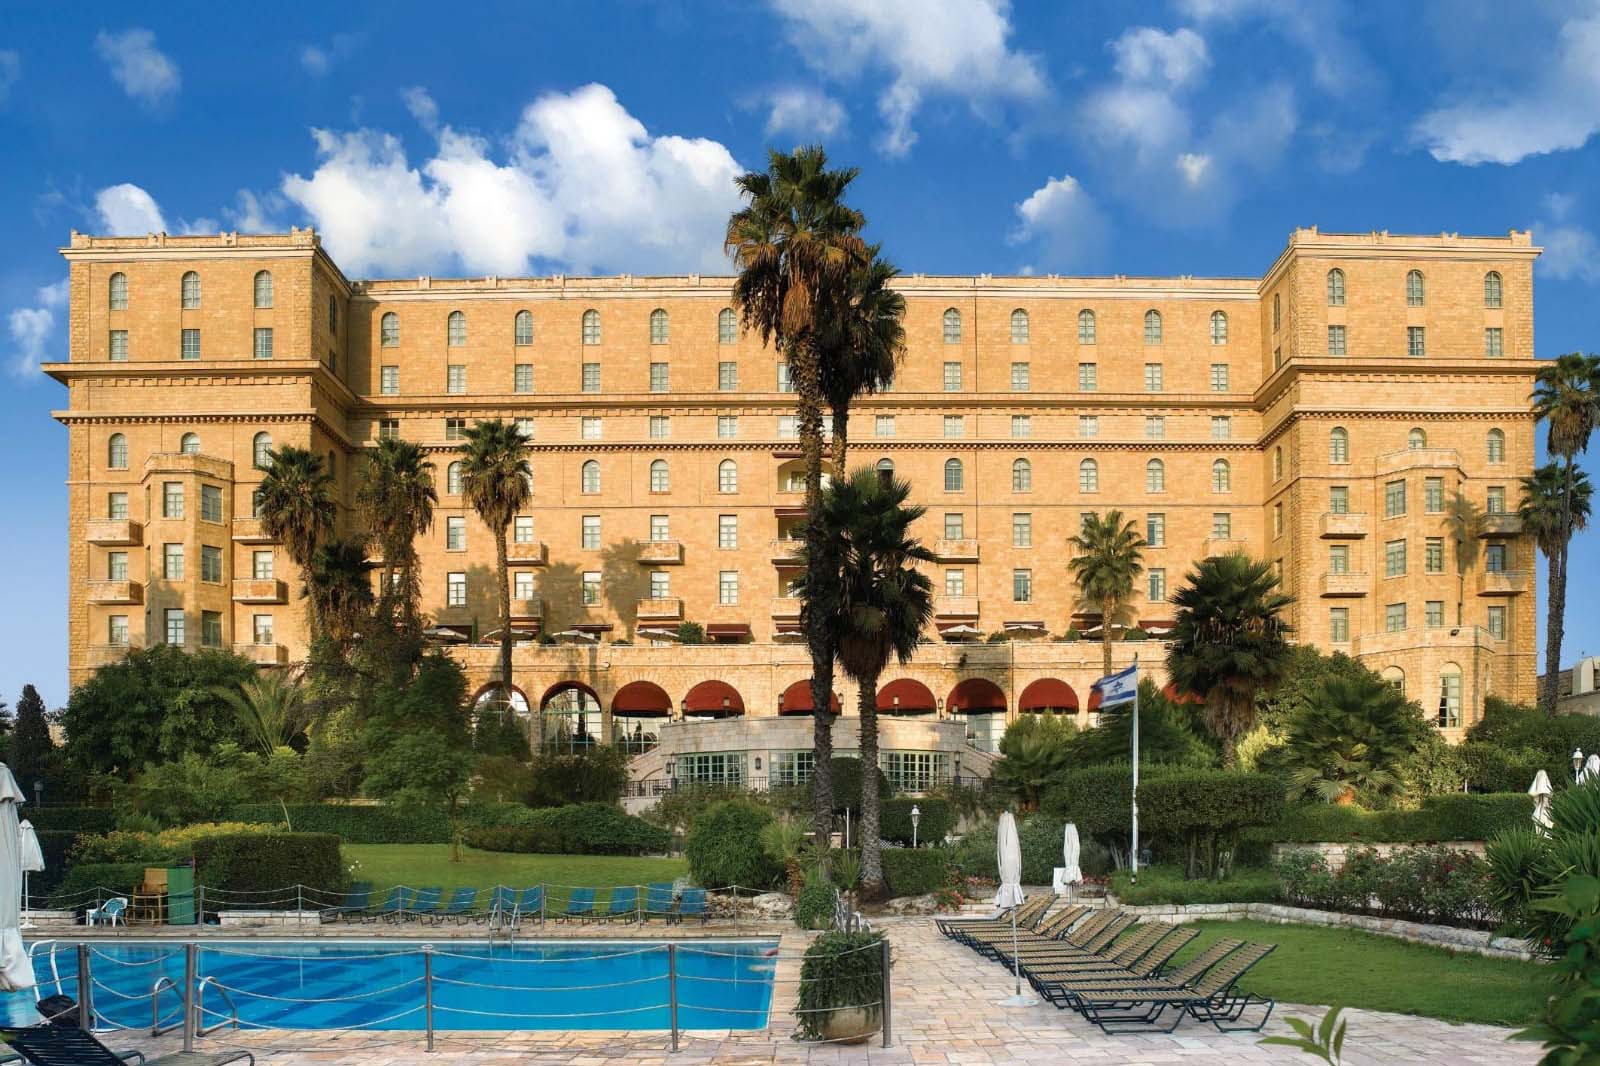 מלון המלך דוד ירושלים פונה לקהל הישראלי: &quot;מאמינים שלקראת הקיץ התפוסה שם תעלה&quot; (צילום: סיון פרג׳)